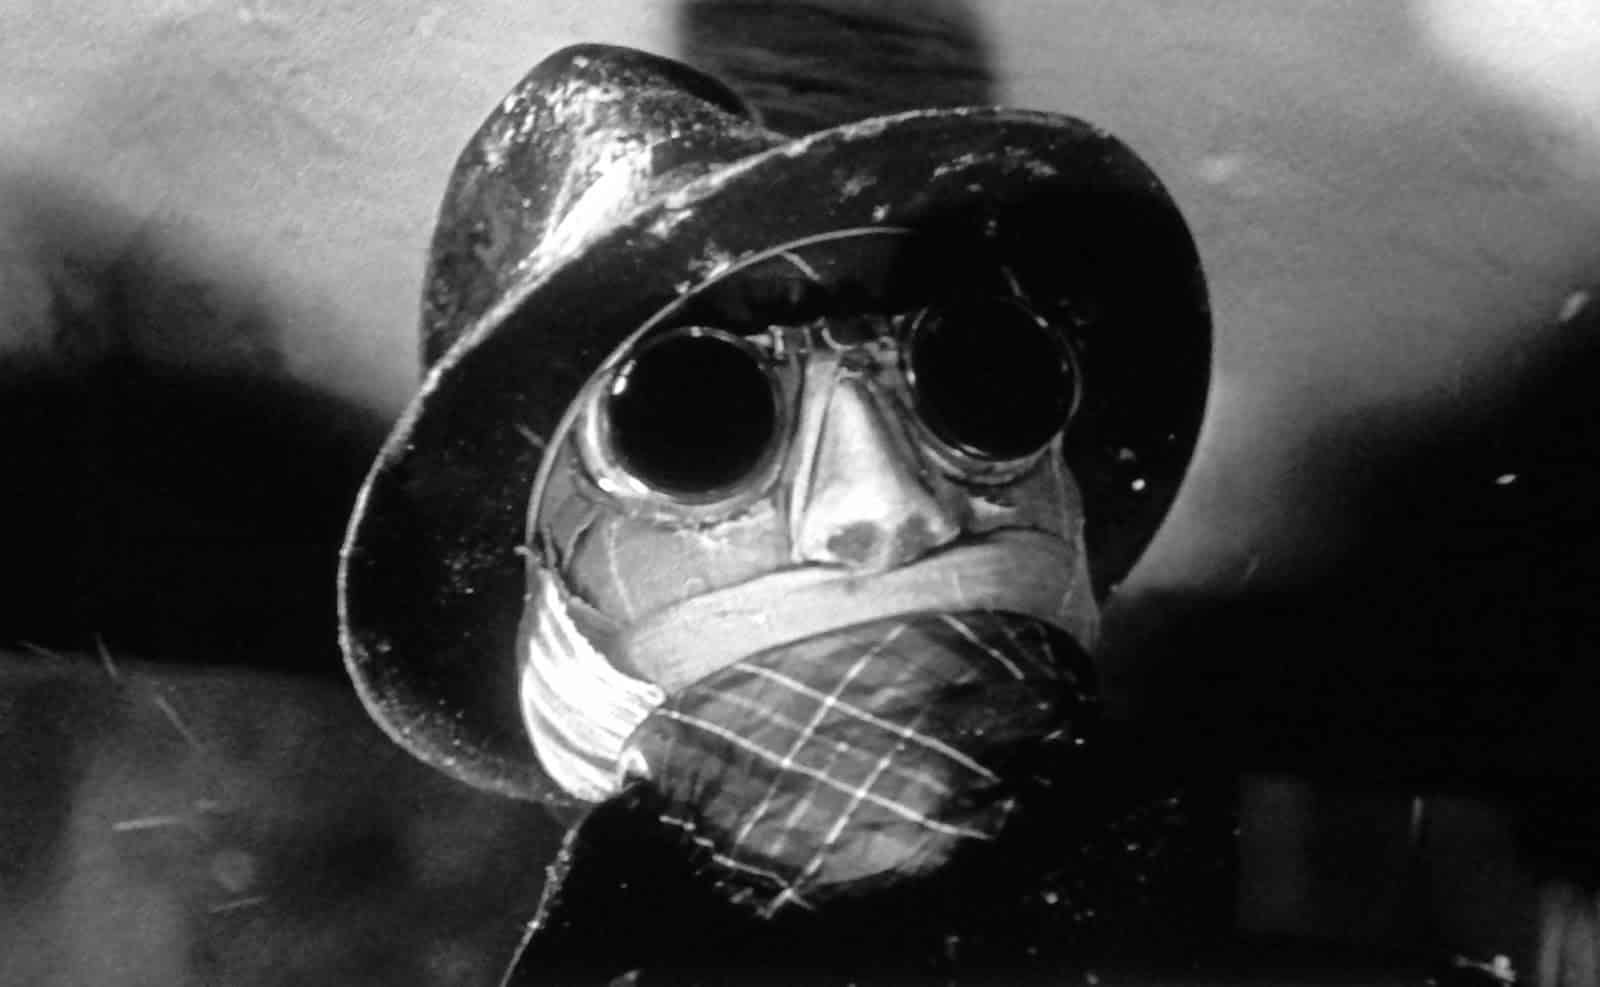 En närbild på Den osynlige mannen. Han har på sig sina svarta solglasögon och hatt. Hans ansikte är inlindat i bandage.